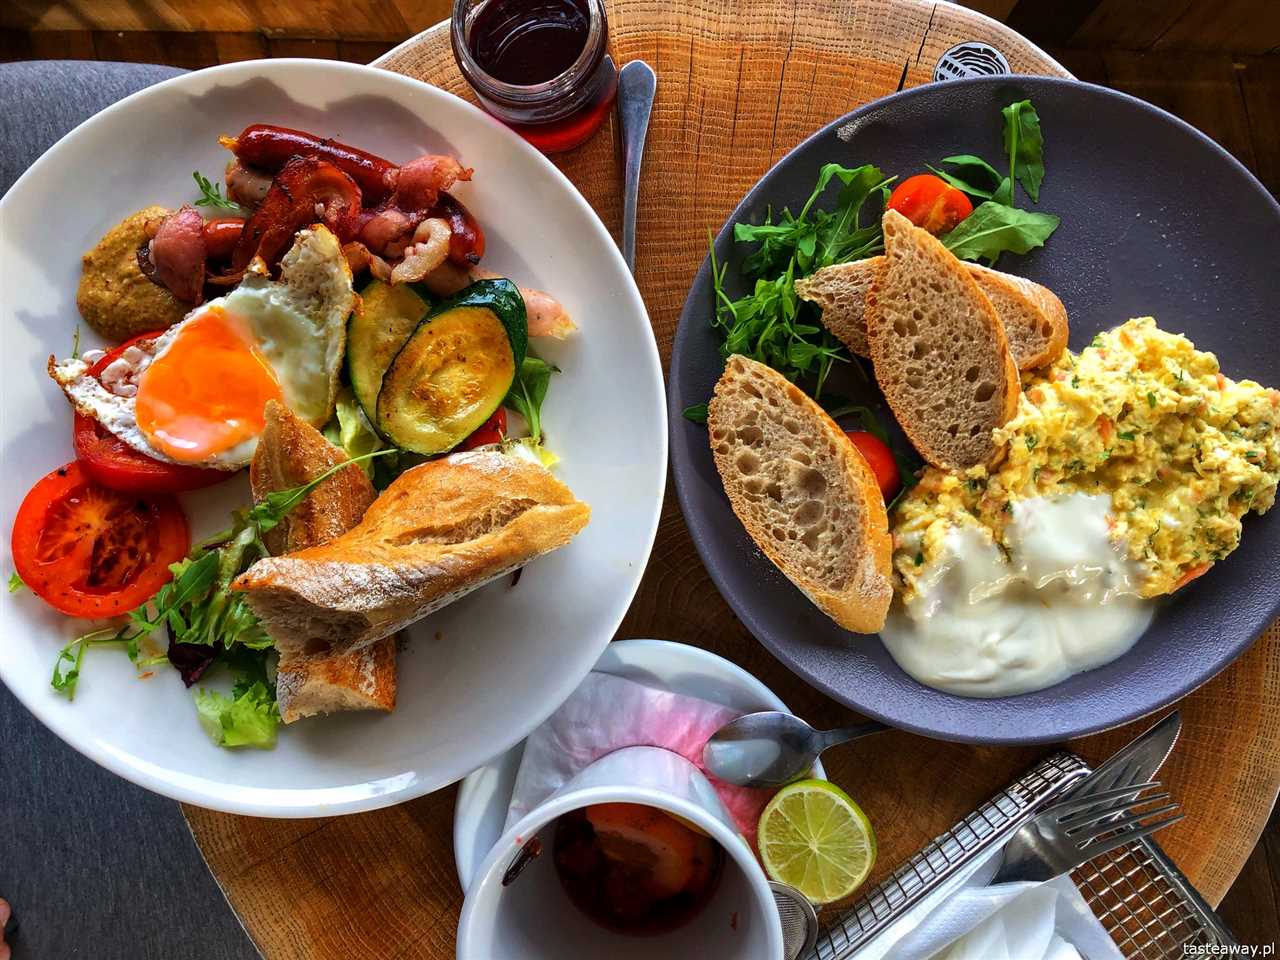 Najlepsze restauracje Zakopane - Gdzie zjeść smacznie w górach?